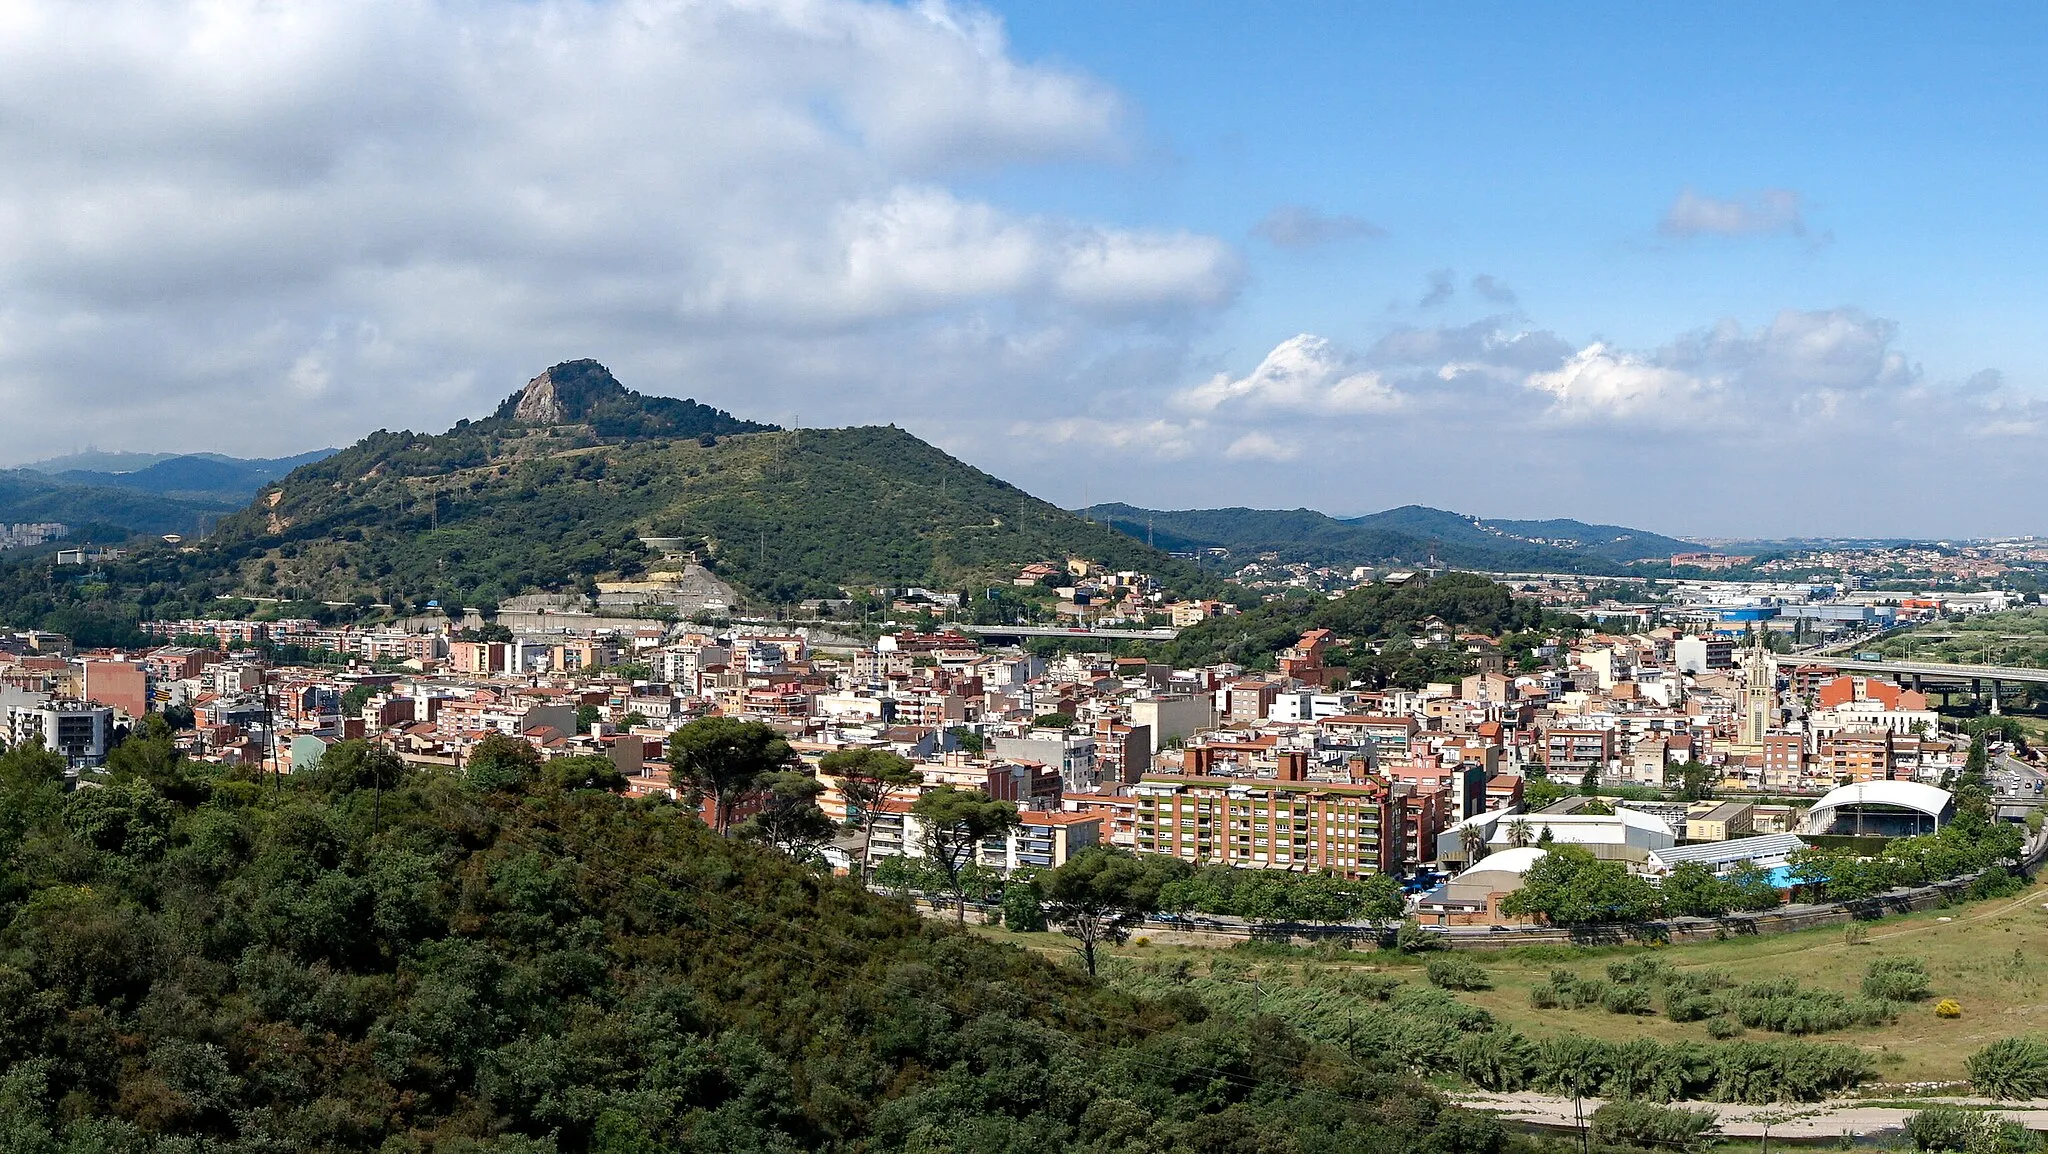 Image of Montcada i Reixac